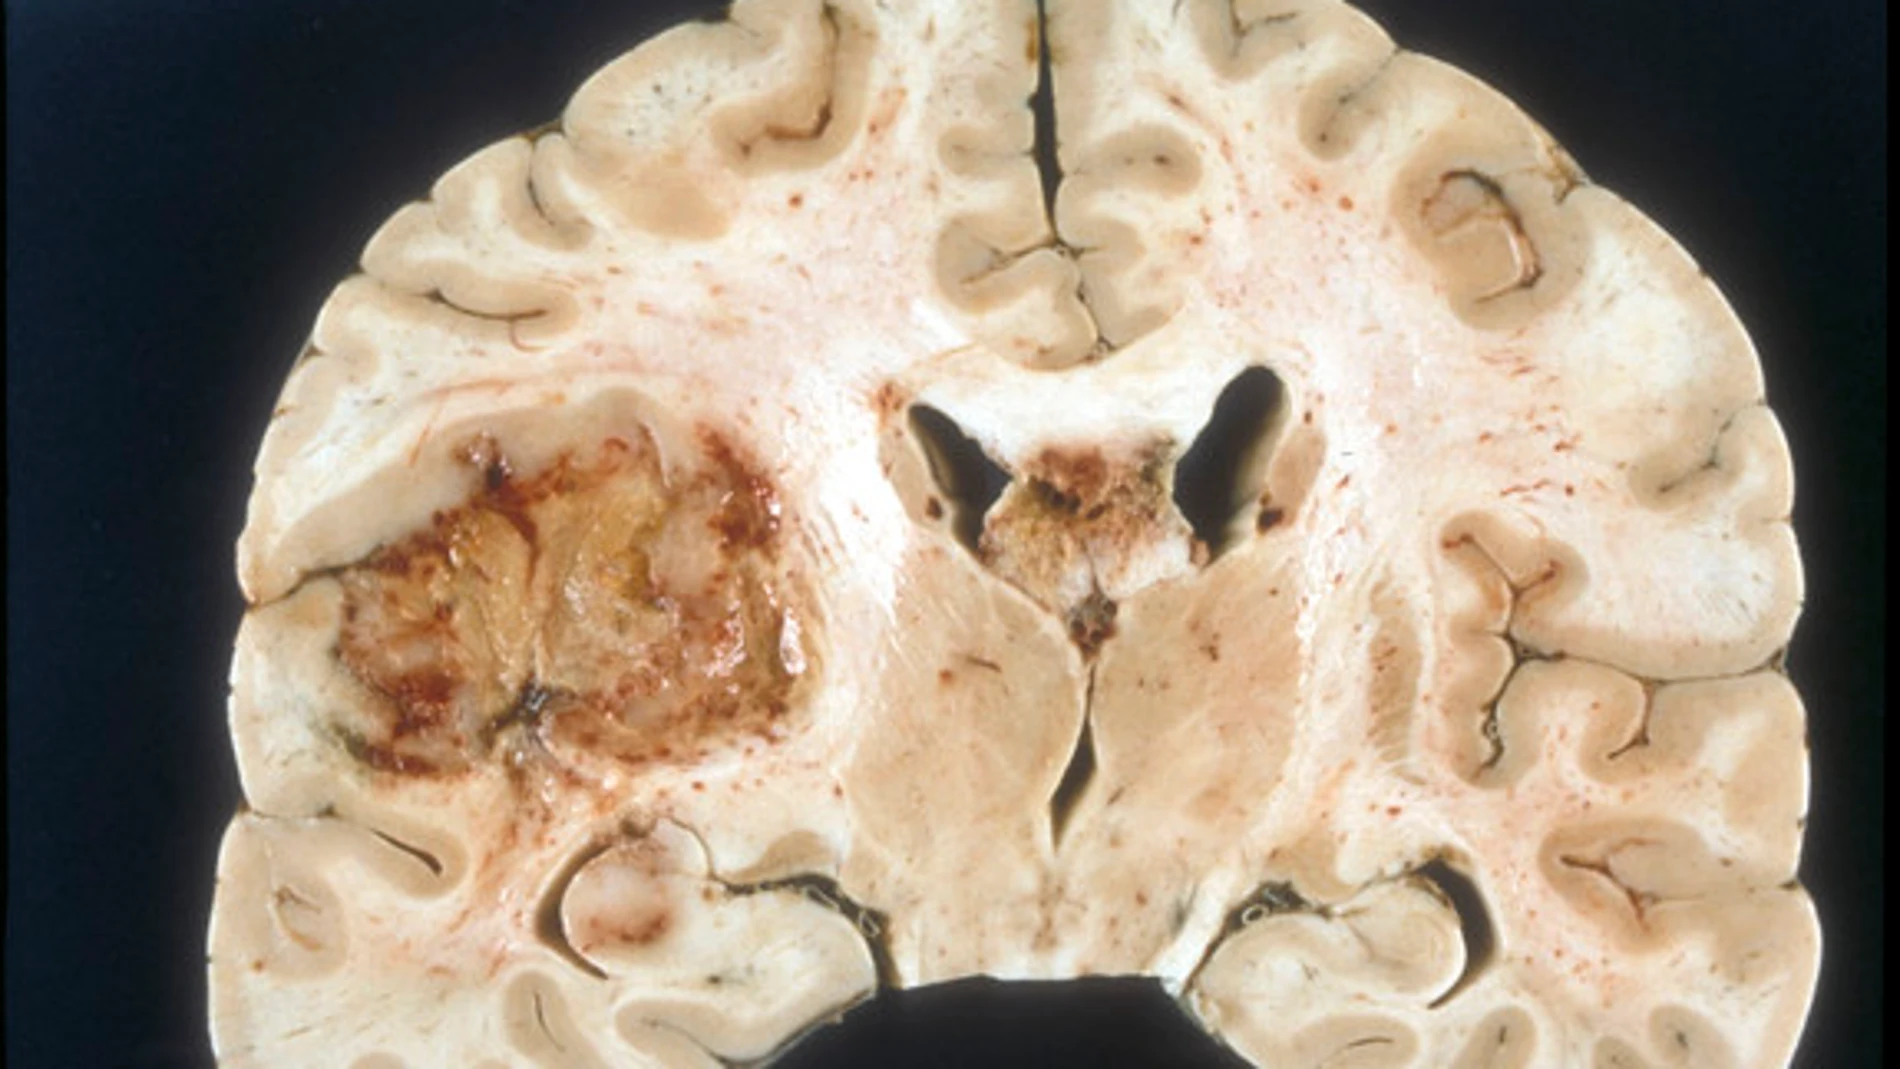 Una alteración bioquímica explica la resistencia de tumores cerebrales agresivos